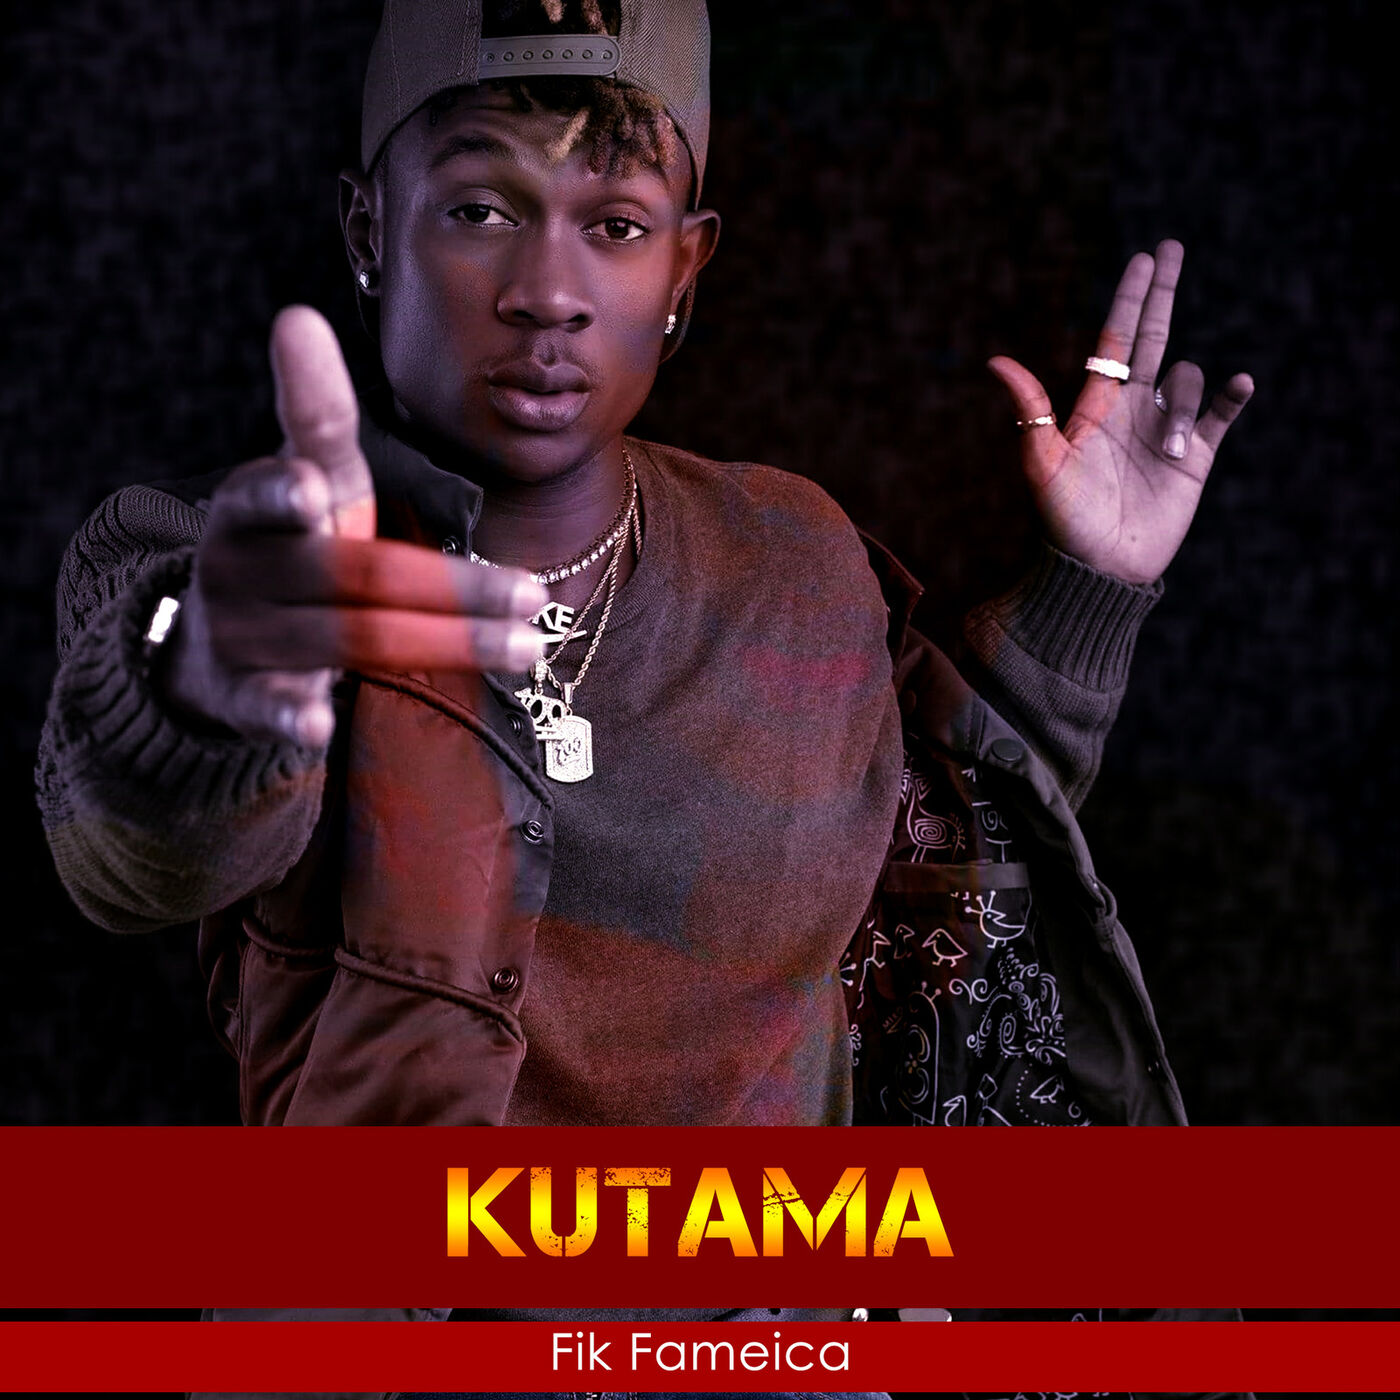 fik-fameica-kutama-album-cover